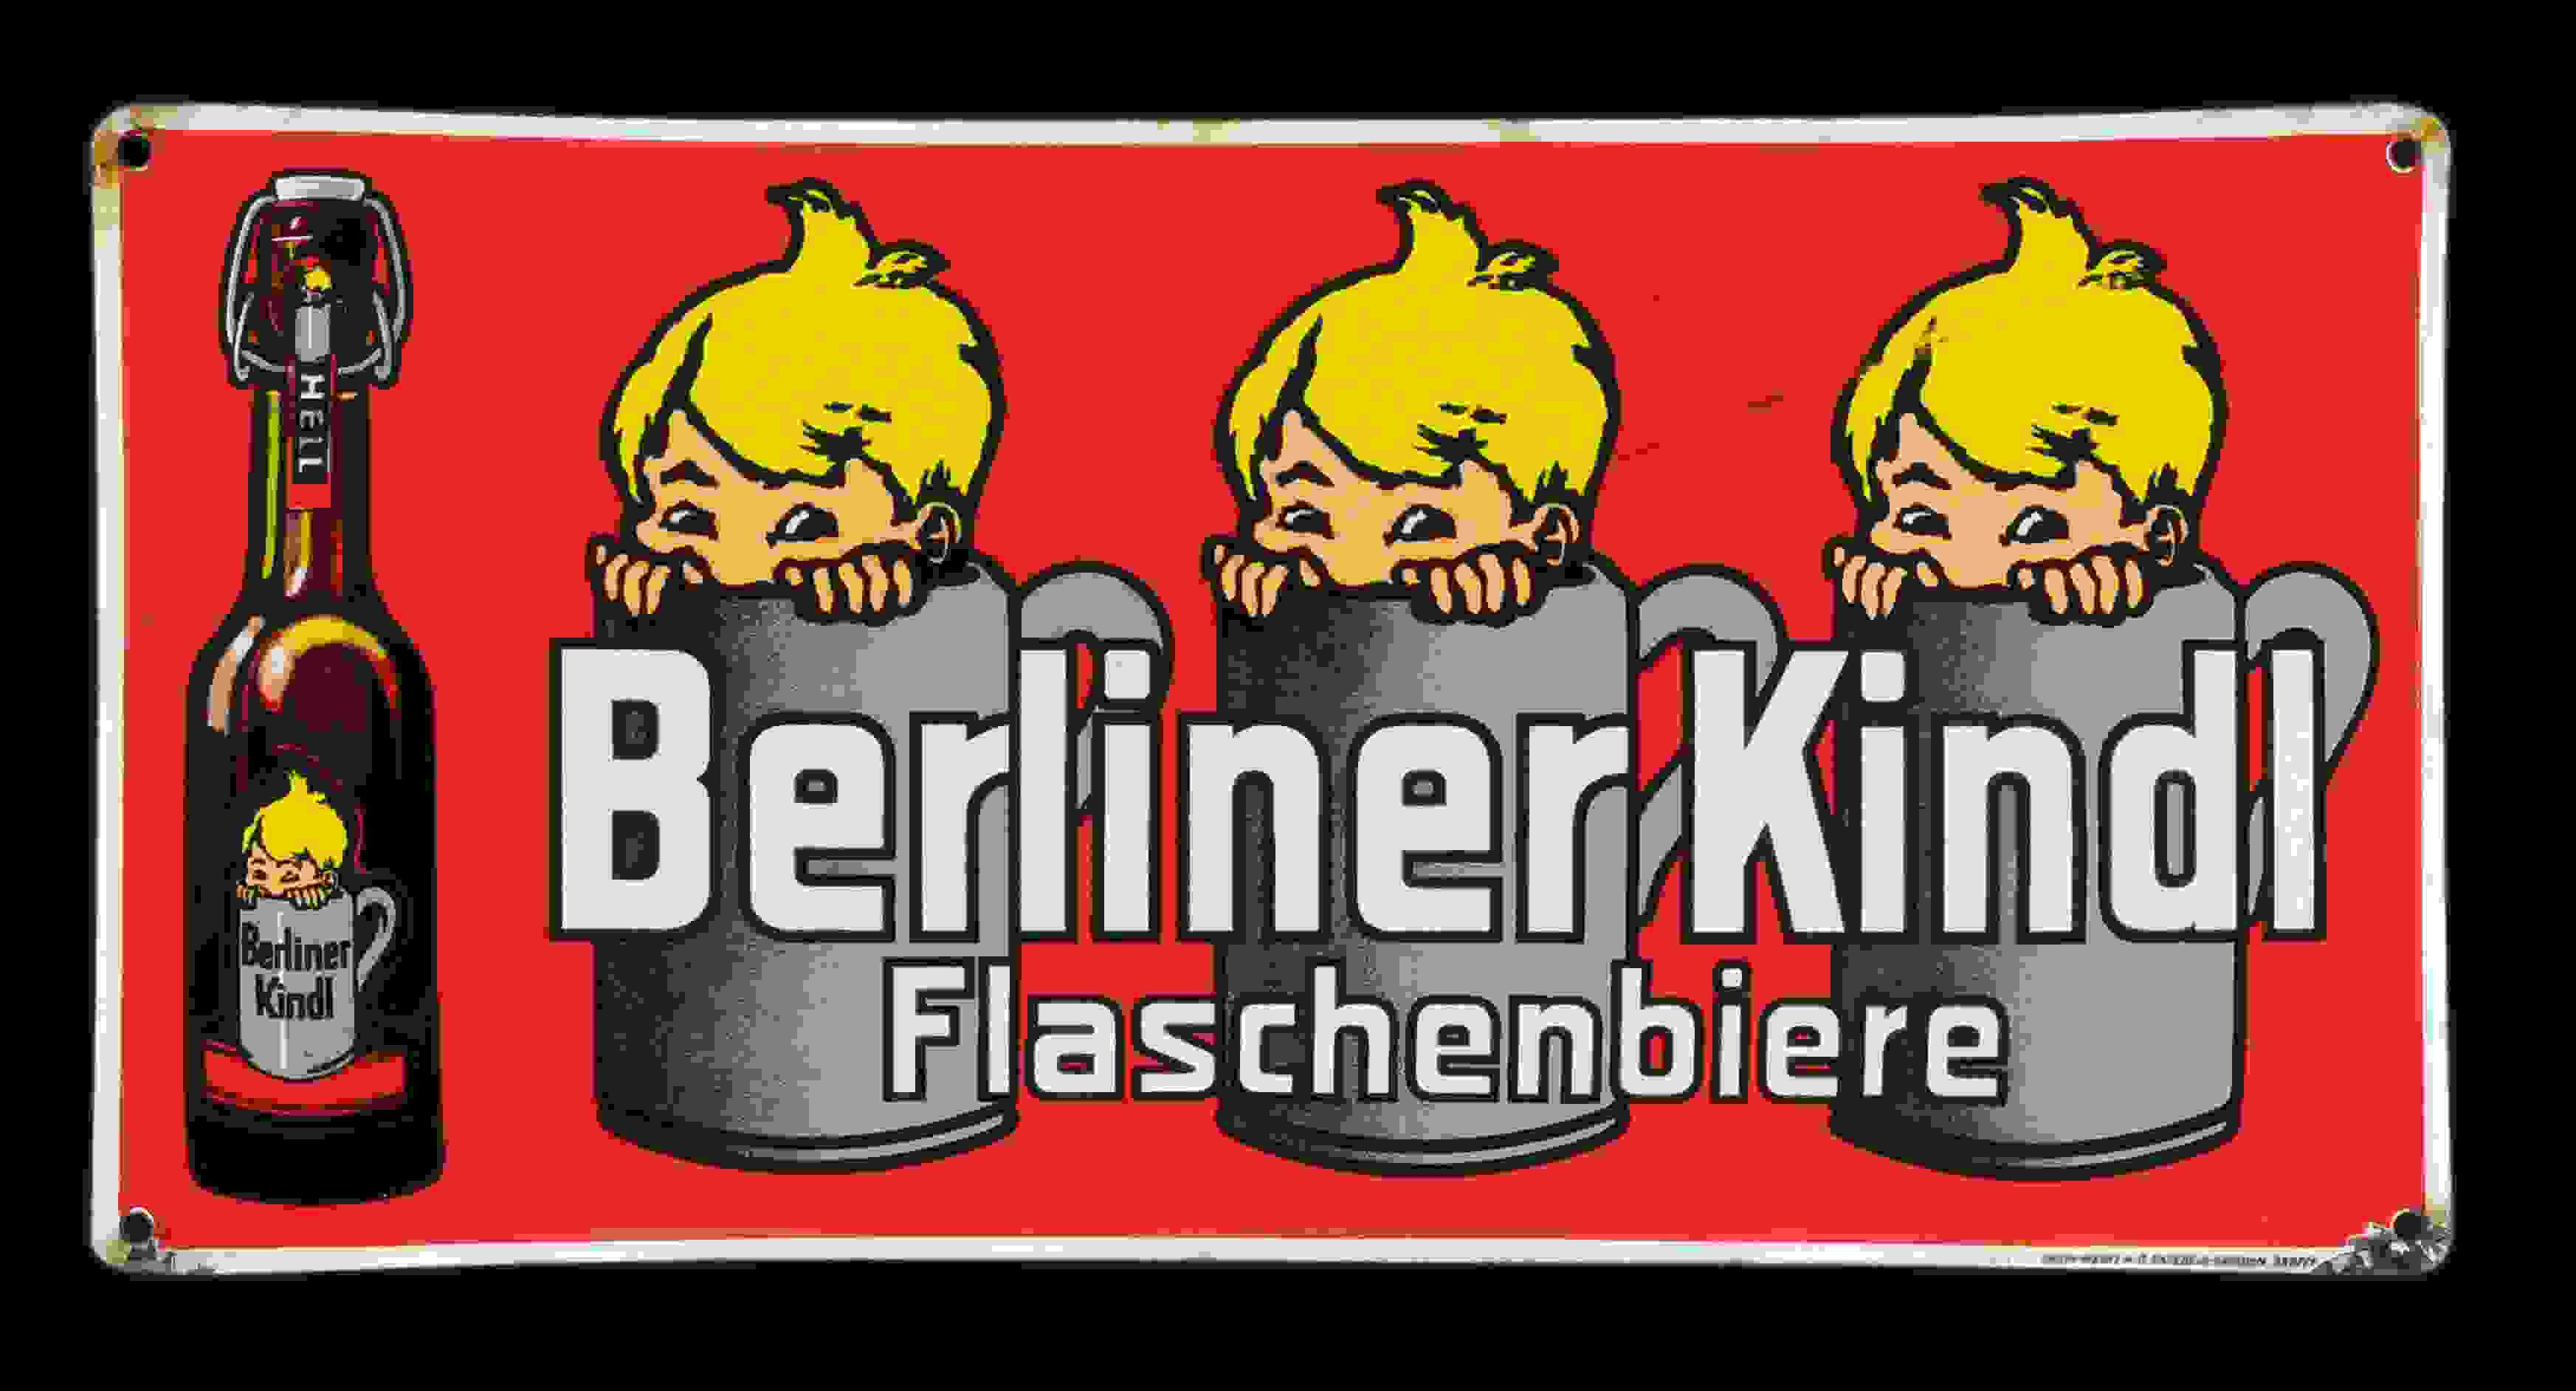 Berliner Kindl 